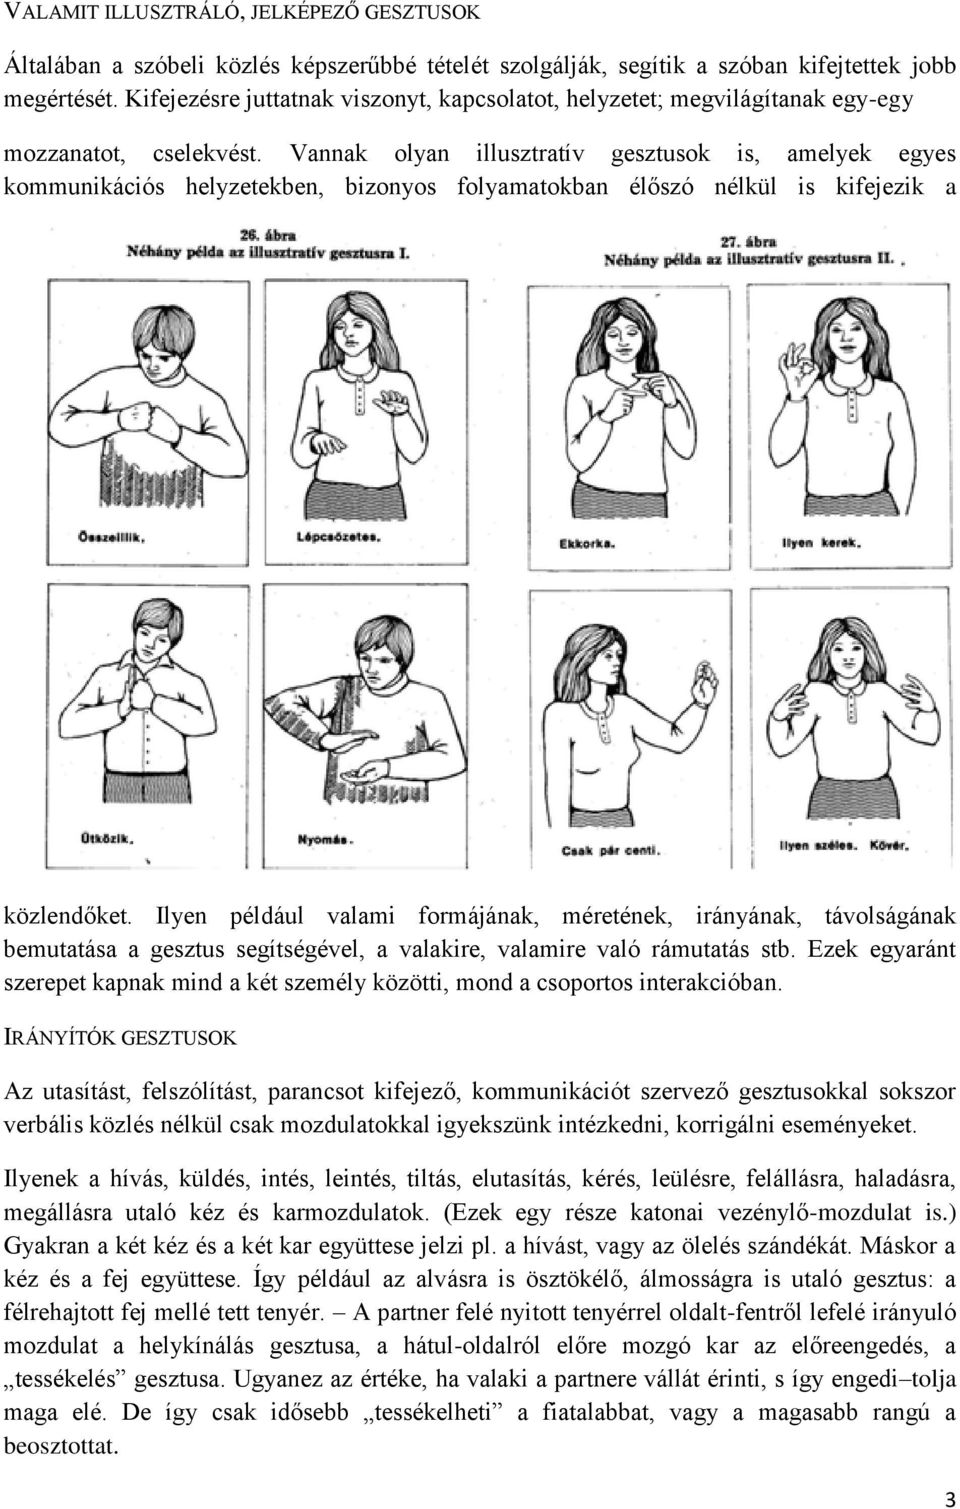 Vannak olyan illusztratív gesztusok is, amelyek egyes kommunikációs helyzetekben, bizonyos folyamatokban élőszó nélkül is kifejezik a közlendőket.